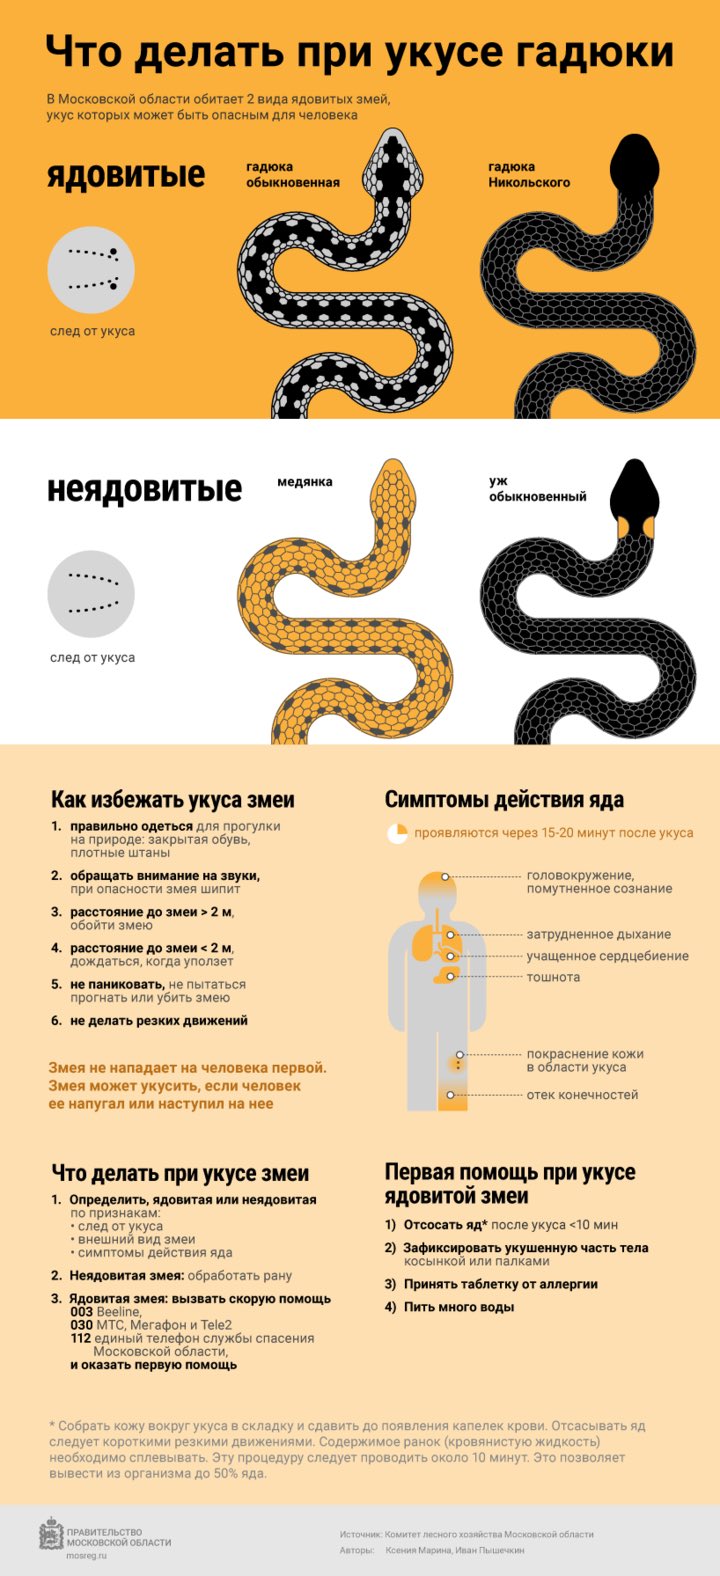 Первая помощь при укусе змеи: что нужно делать, а чего нельзя